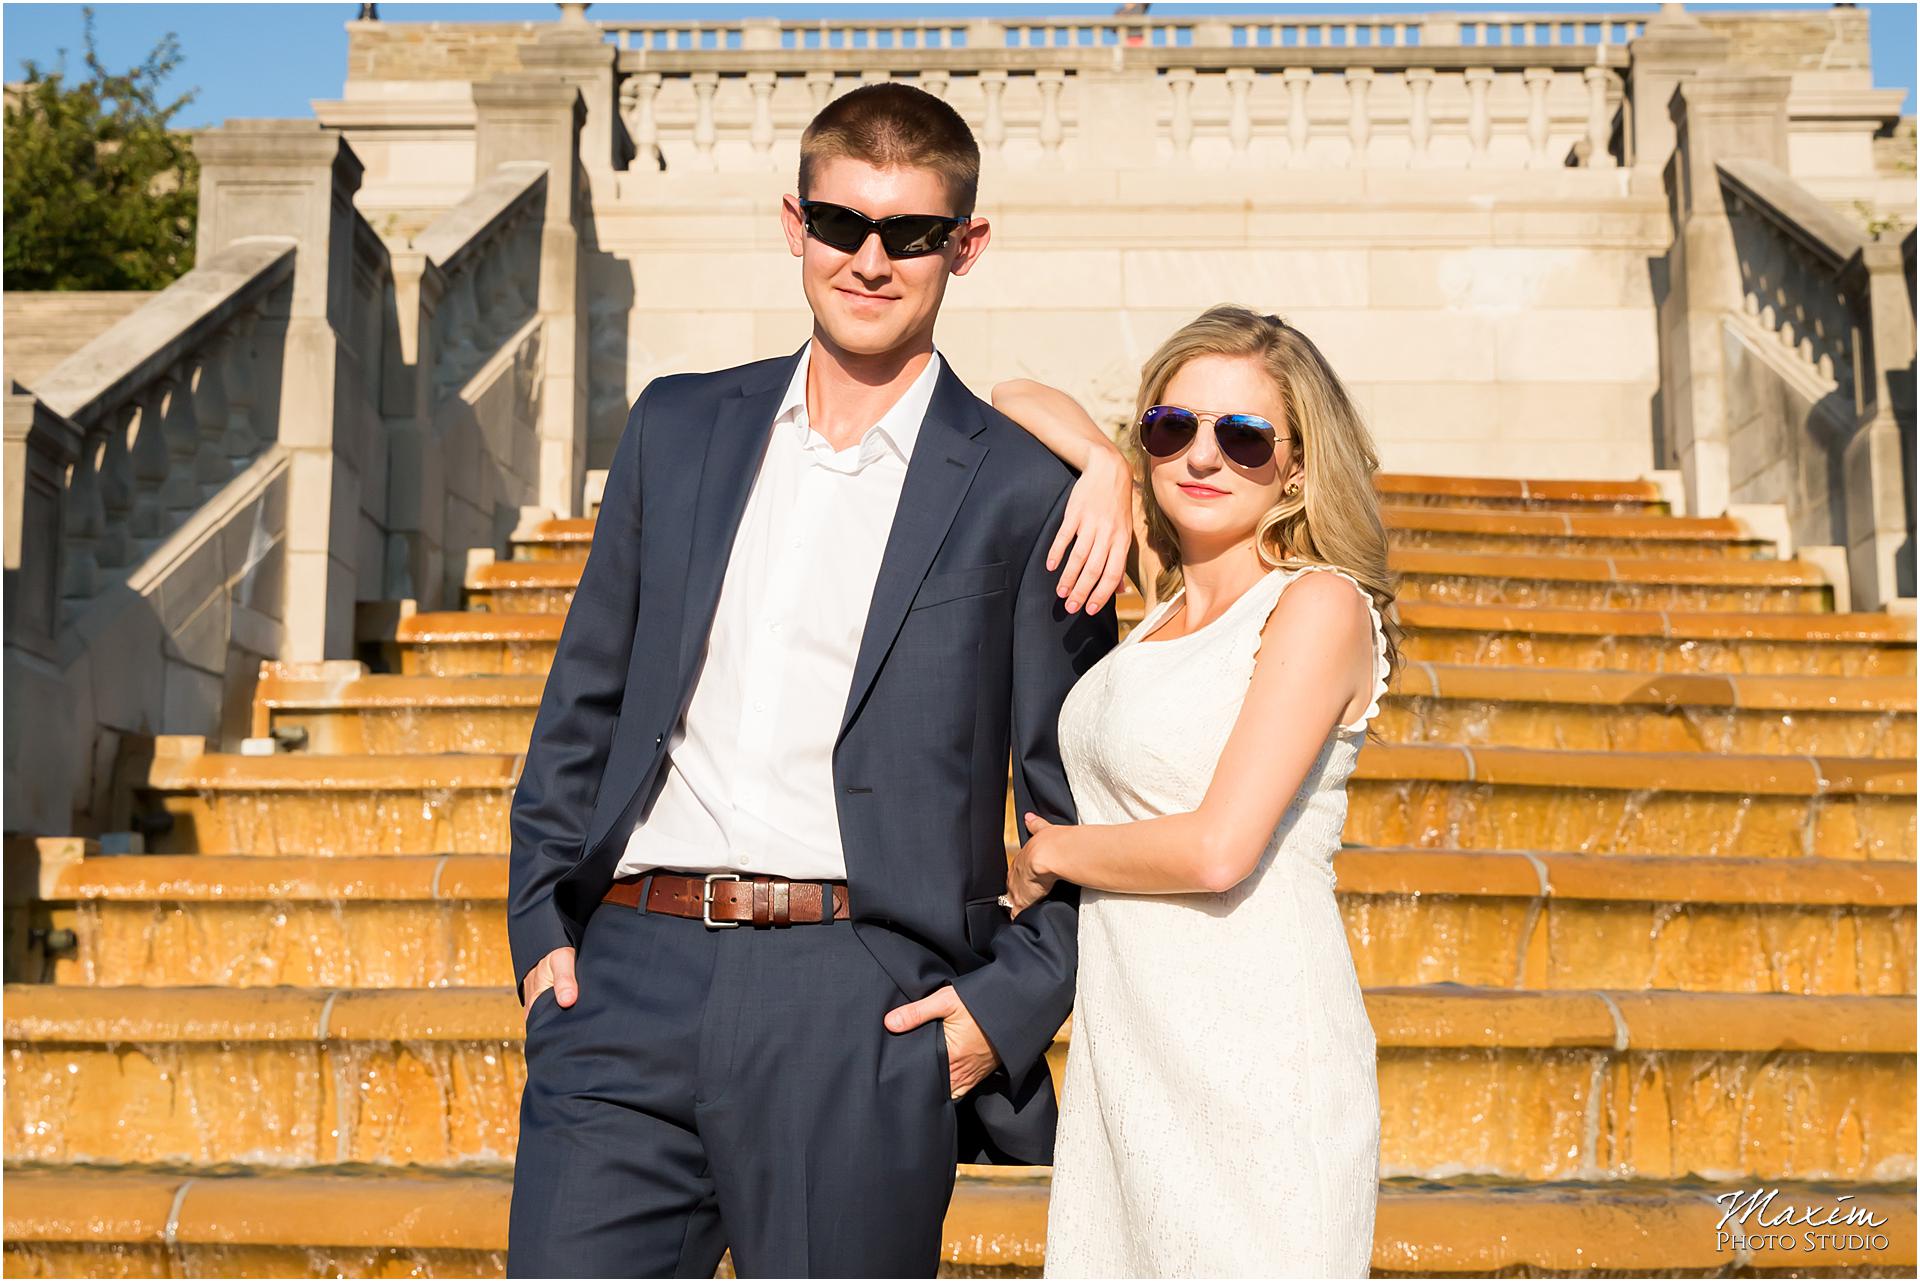 Ault Park Pavillion steps, engagement sunglasses